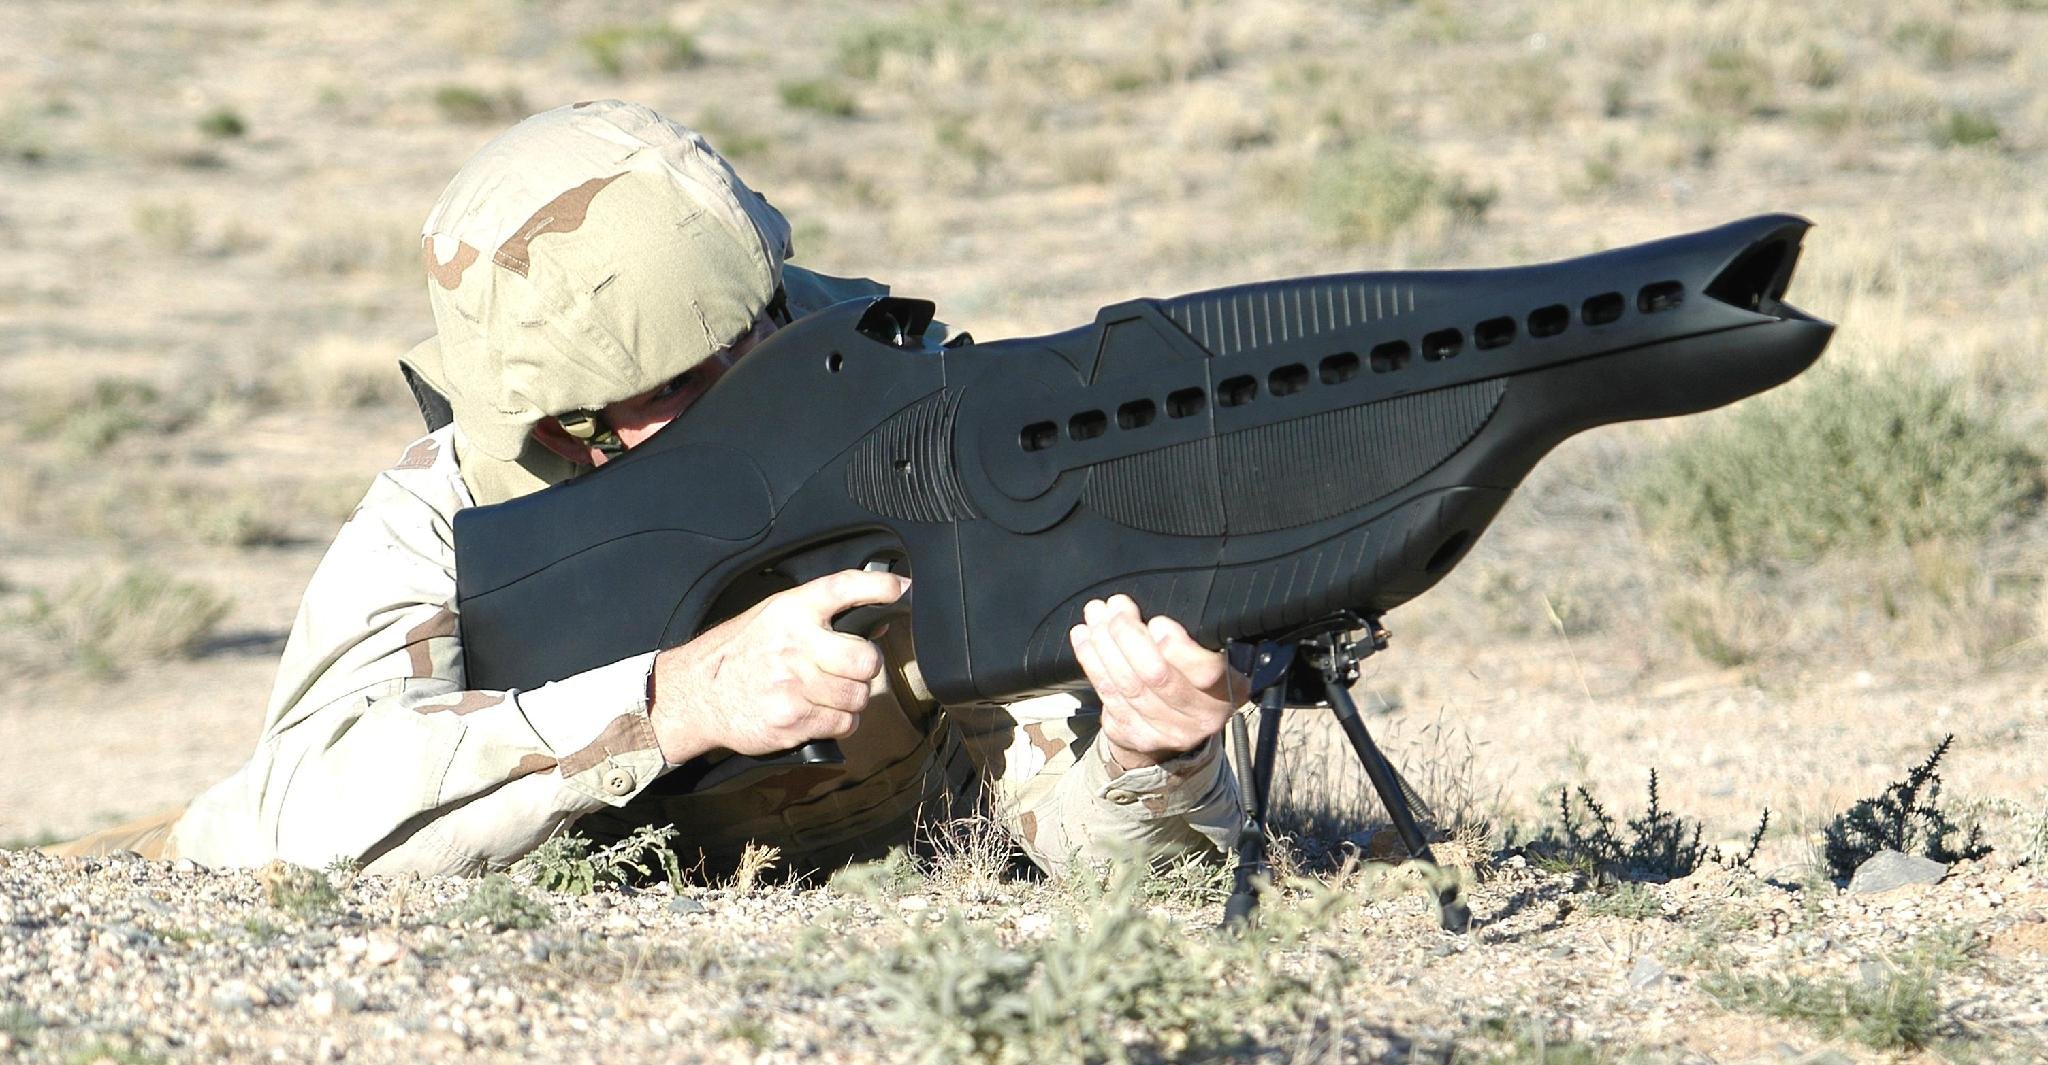 Секретное оружие в руках ранкера. Лазерная винтовка PHASR. Лазерная штурмовая винтовка ZKZM 500. Phaser лазерная винтовка. Нелетальное оружие США.